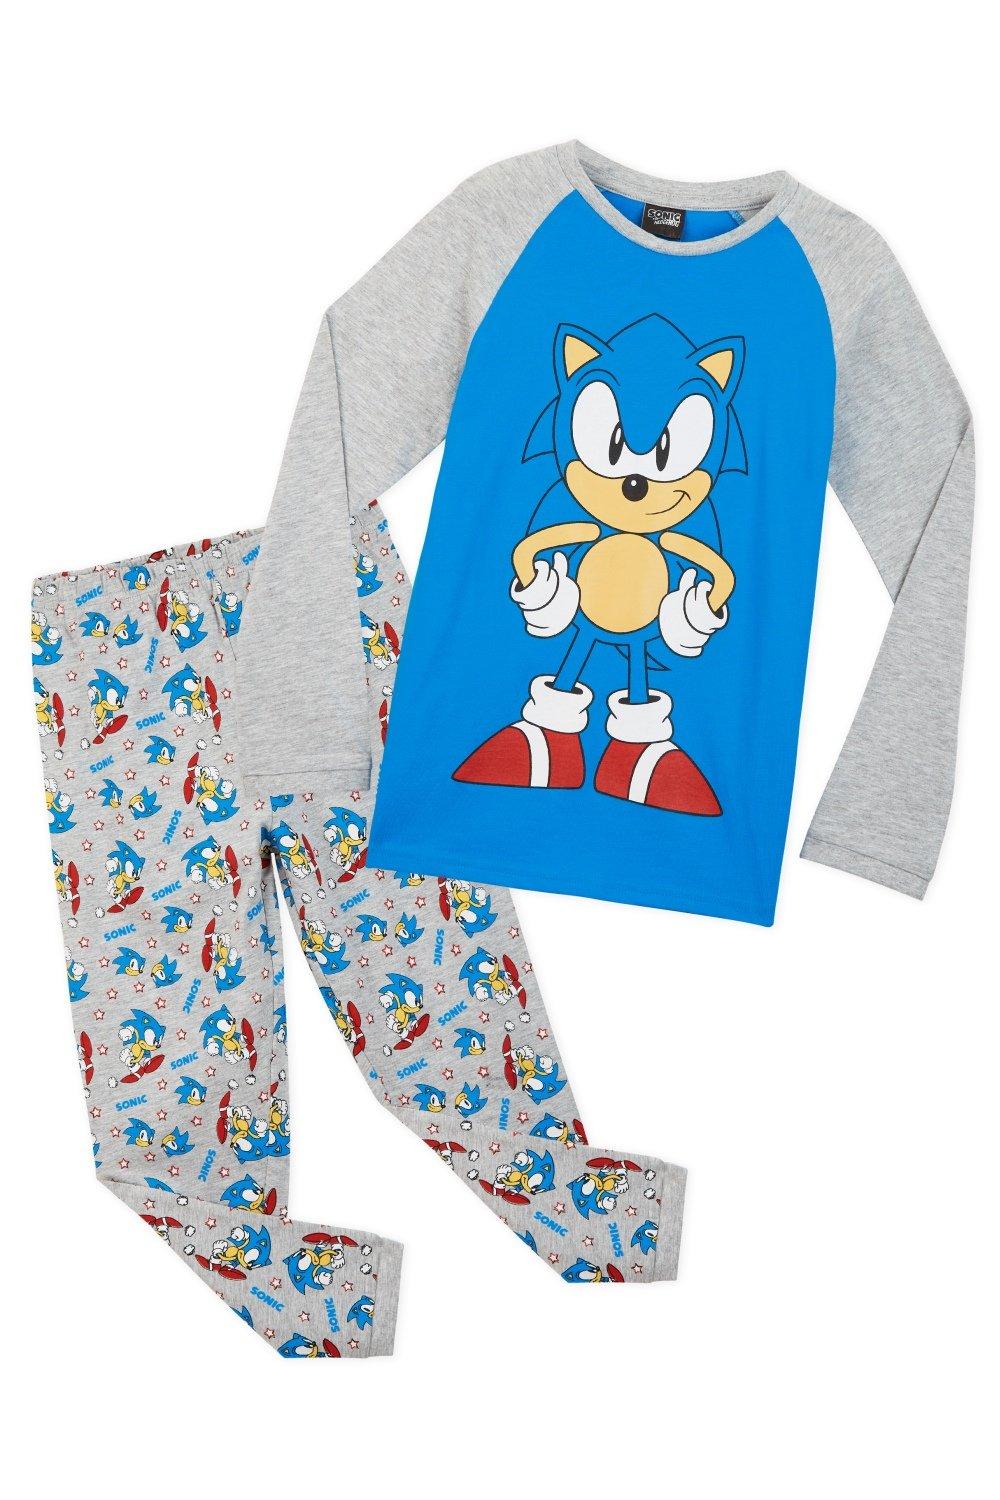 Пижамный комплект Sonic the Hedgehog, мультиколор пижама женский костюм пижама с принтом женская осенняя дышащая верхняя одежда с длинными рукавами домашняя одежда с деревянными ушками